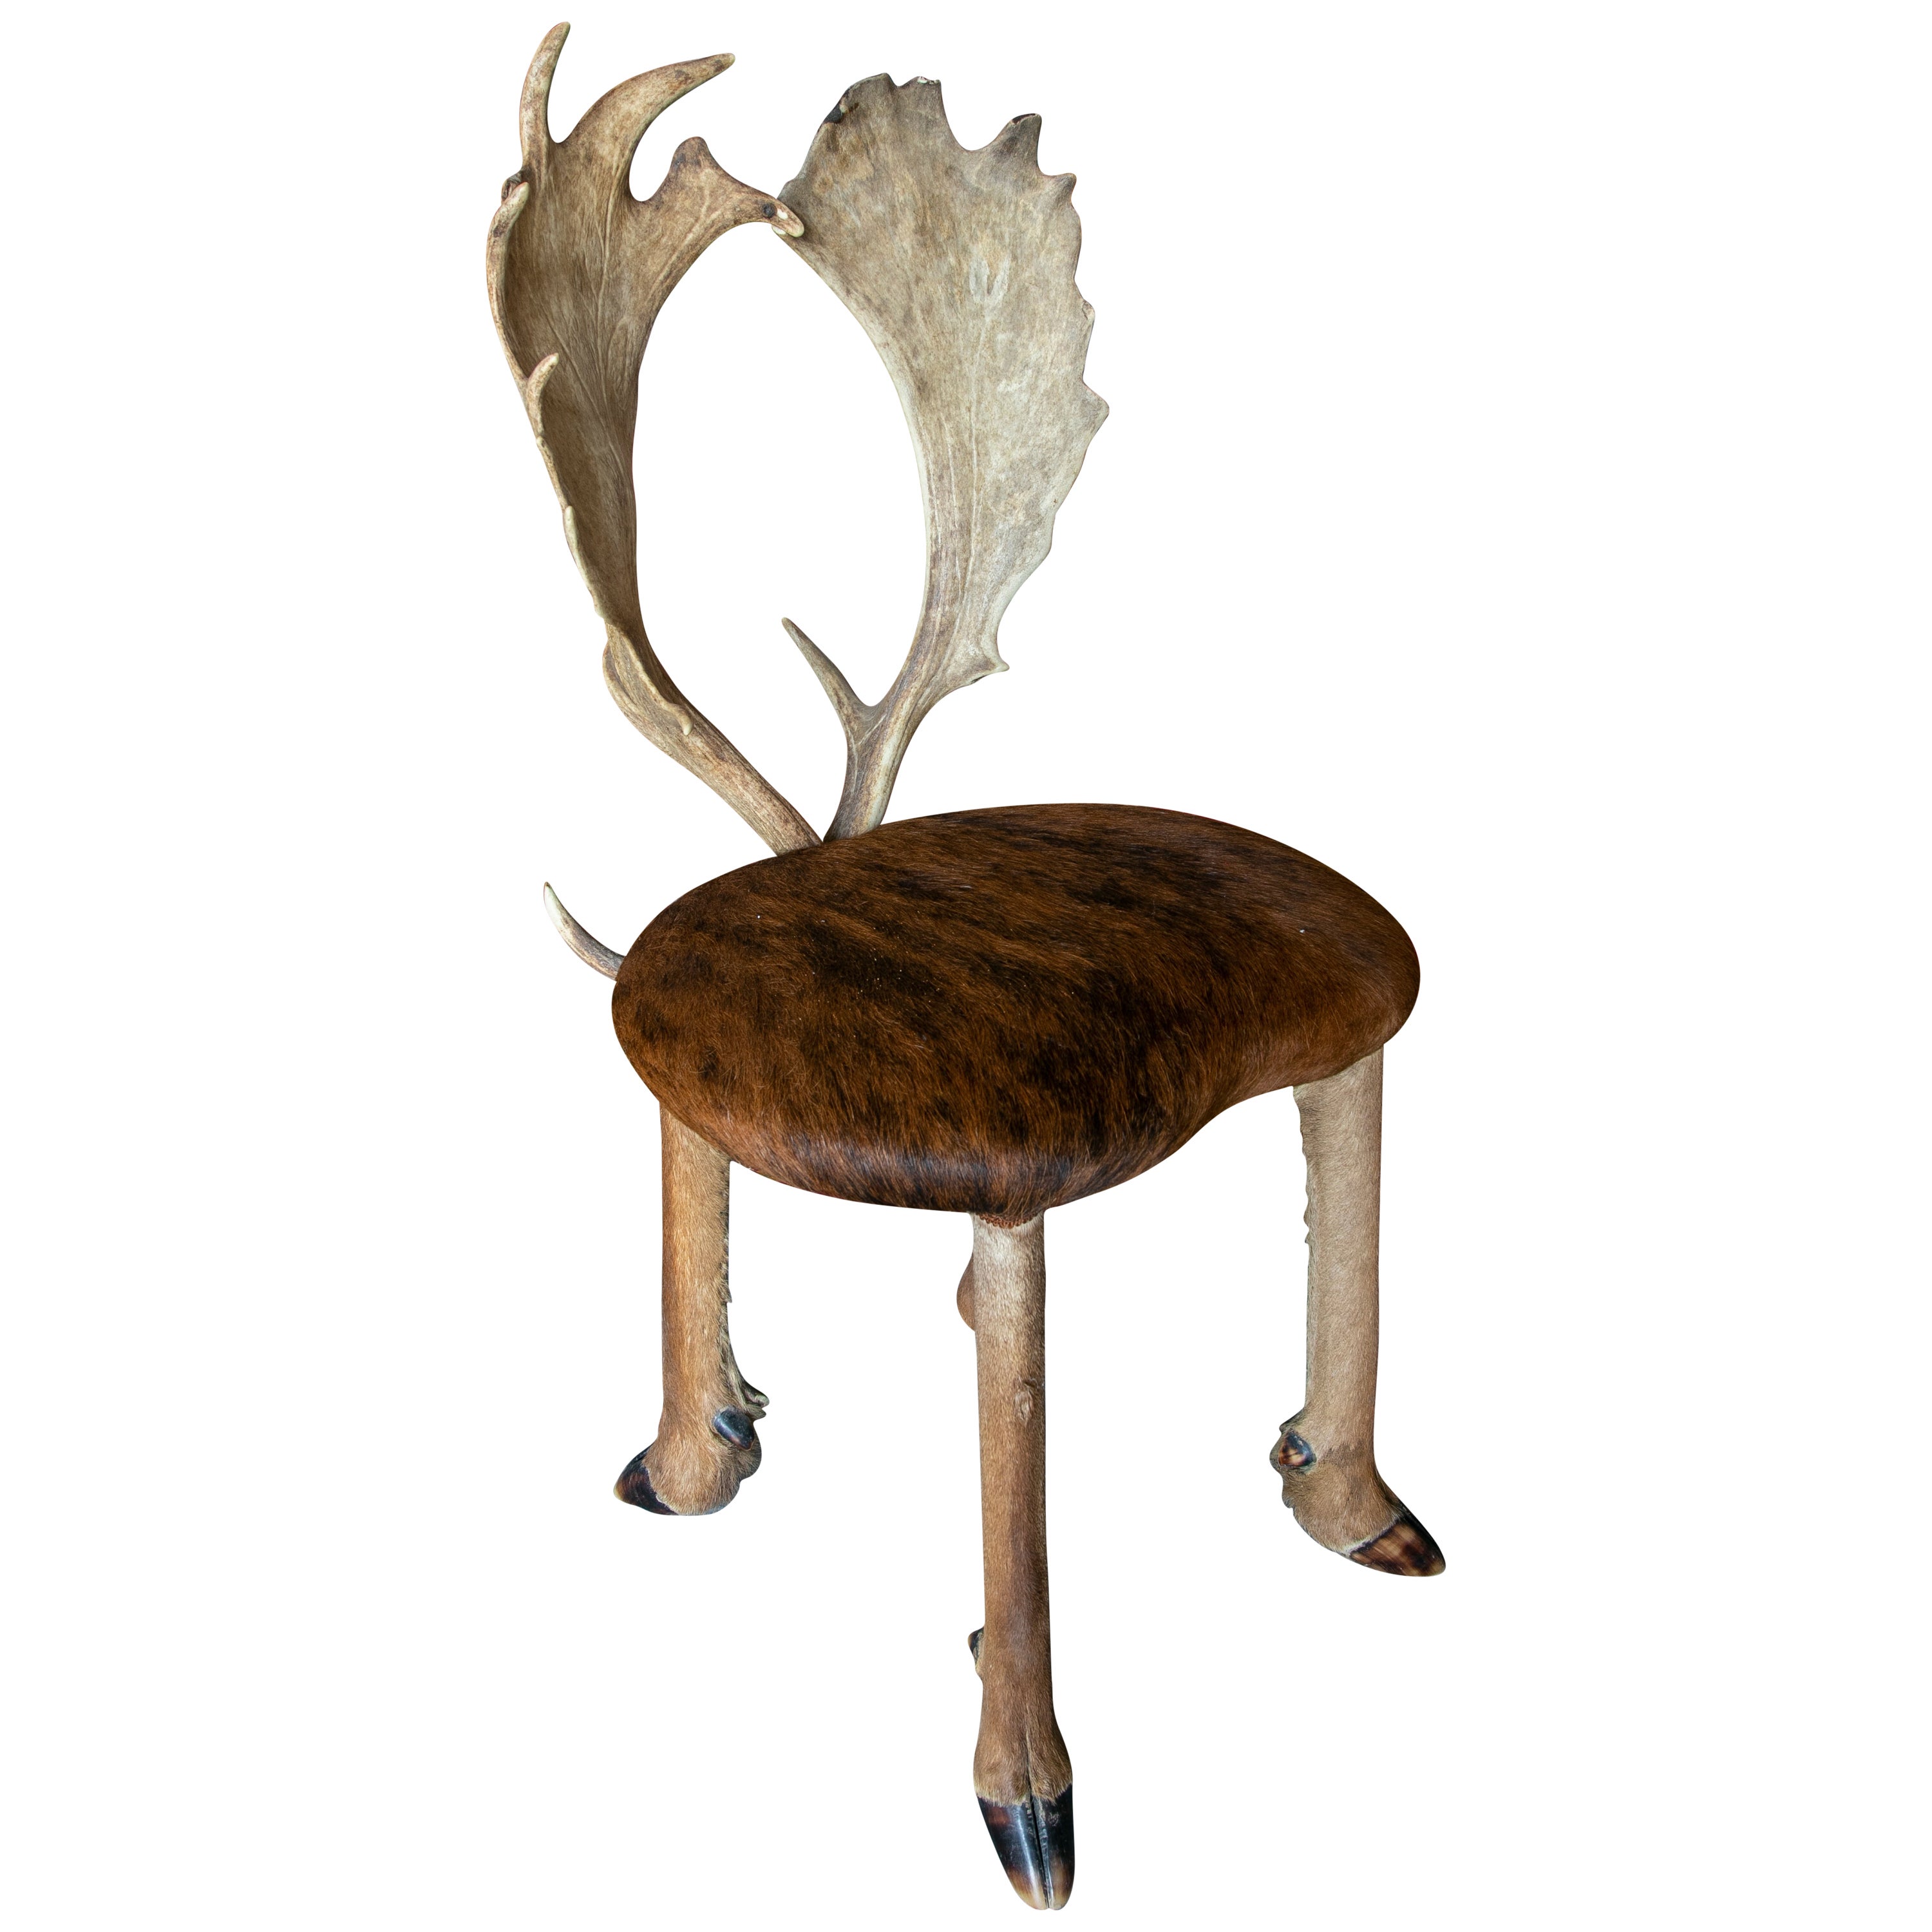 1950s Austrian Chair w/ Deer Leather Seats, Hoof Legs & Antlers Backrest